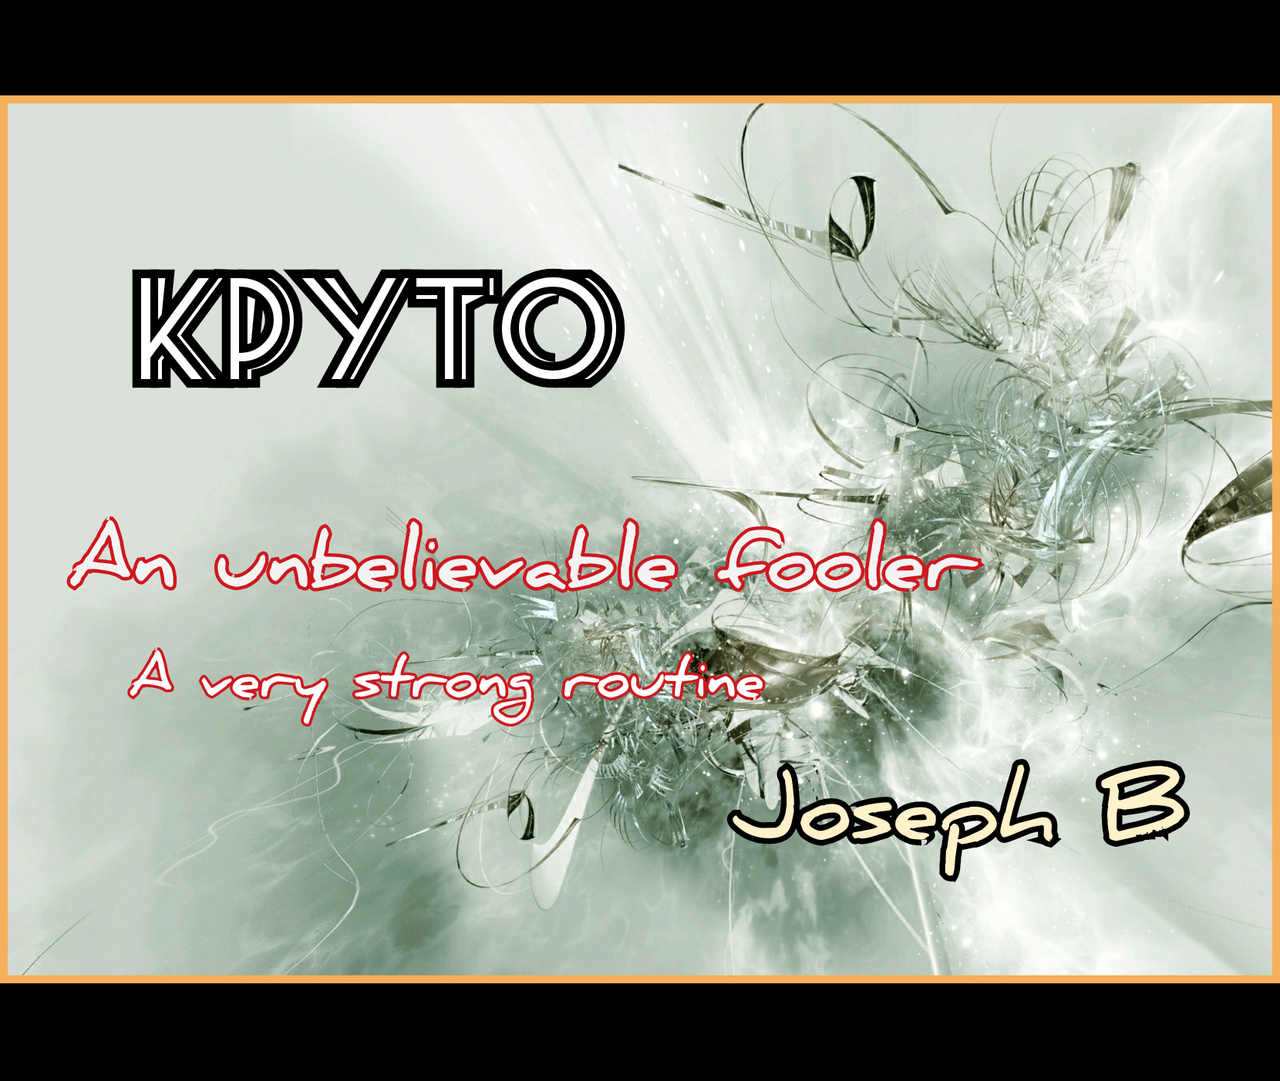 Kpyto by Joseph B (MP4 Video + PDFs Download)